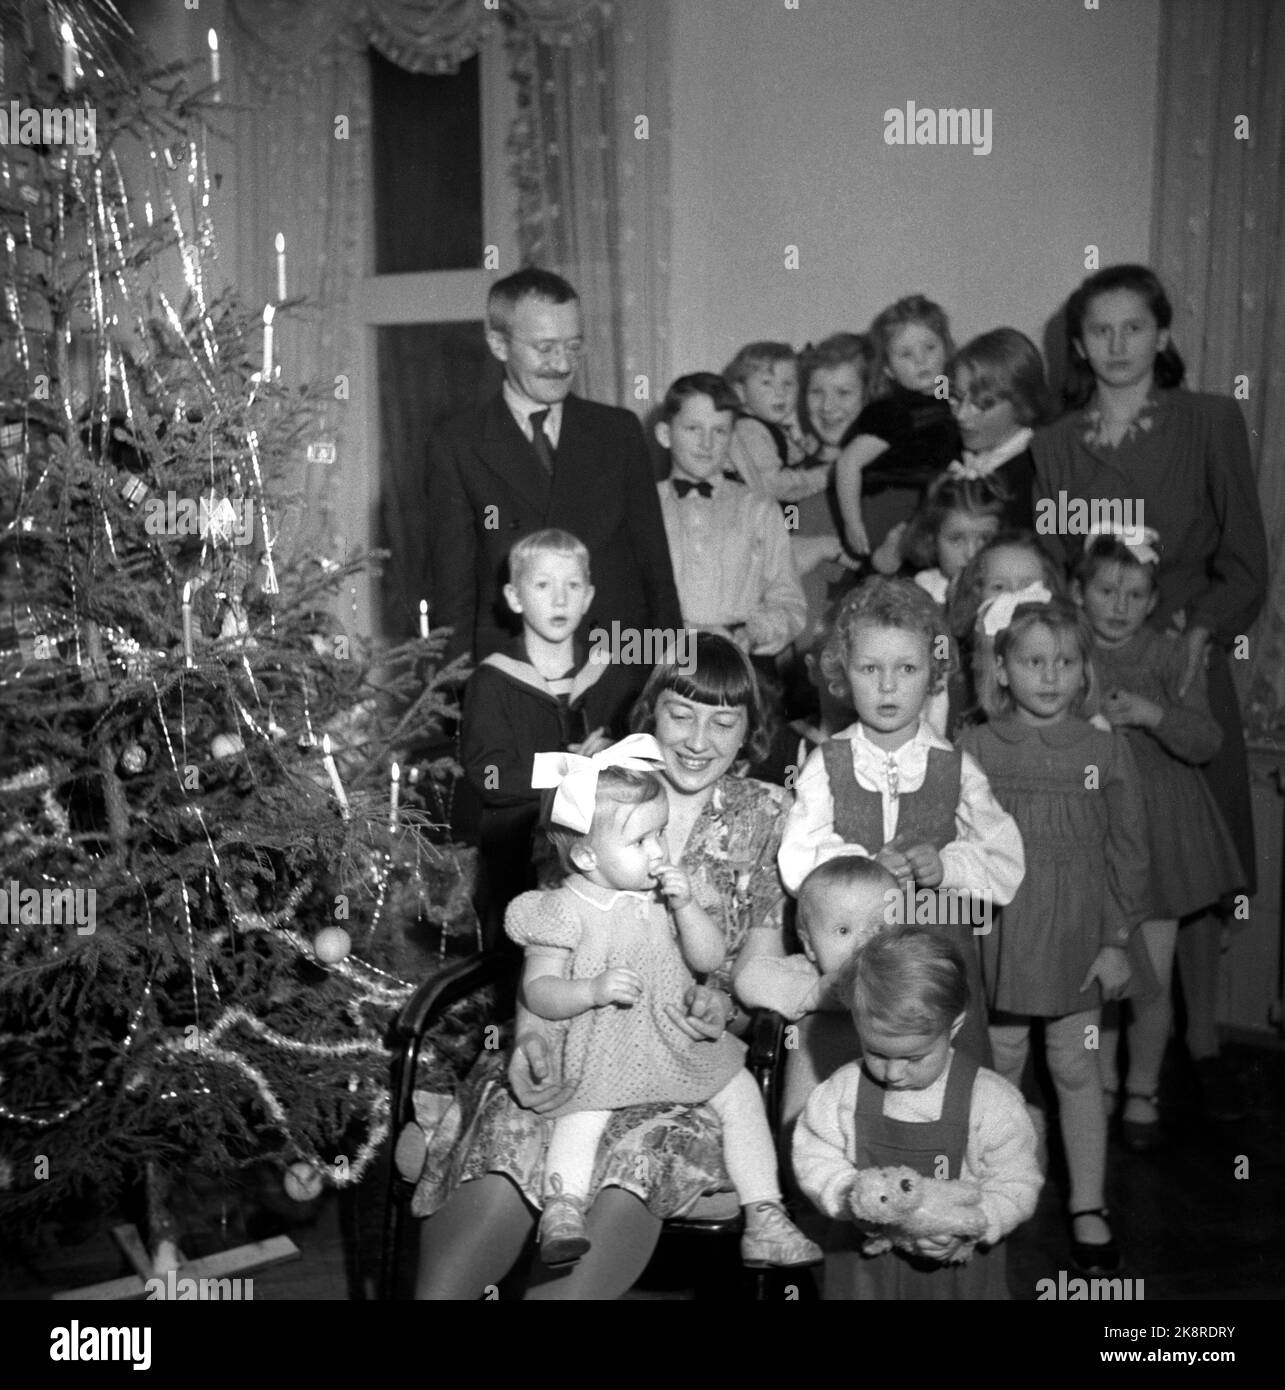 Oslo 19490107 l'auteur Arnulf Øverland en famille fête Noël. Intérieur de la salle de séjour avec arbres de Noël avec des bougies et beaucoup d'enfants qui sont venus à une fête de famille. Photo: NTB / NTB Banque D'Images